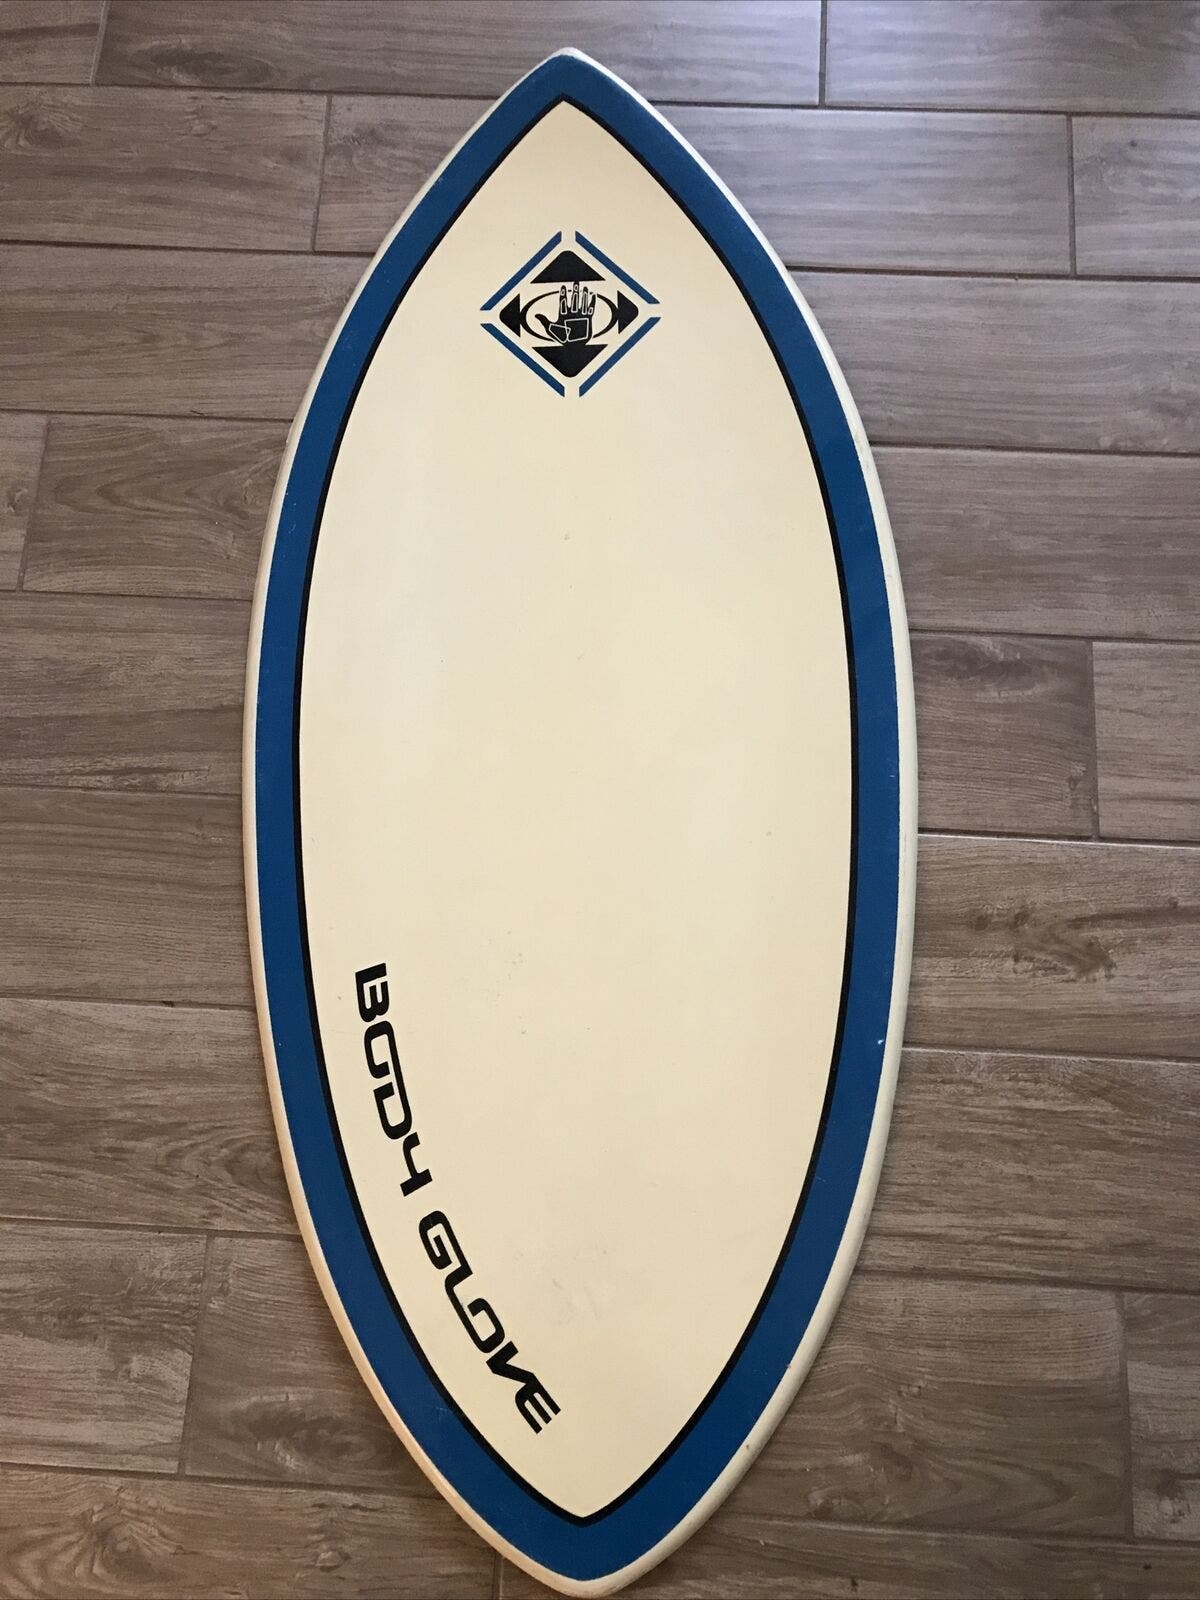 Body Glove 44.5x19.5” Large Skiboard Wakesufer Kneeboard Wood Boogie Board - $85.00